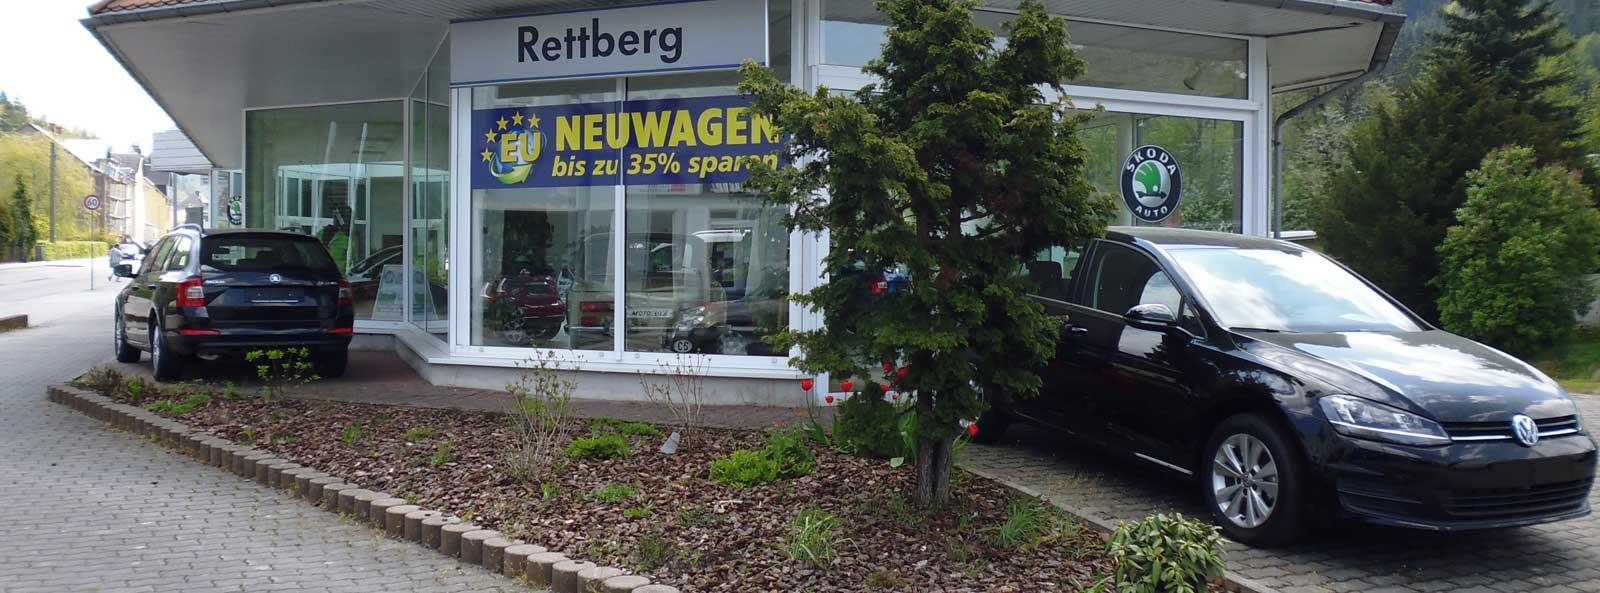 Autohaus Rettberg GmbH - Service Vertragspartner für Volkswagen, Skoda, VW Nutzfahrzeuge